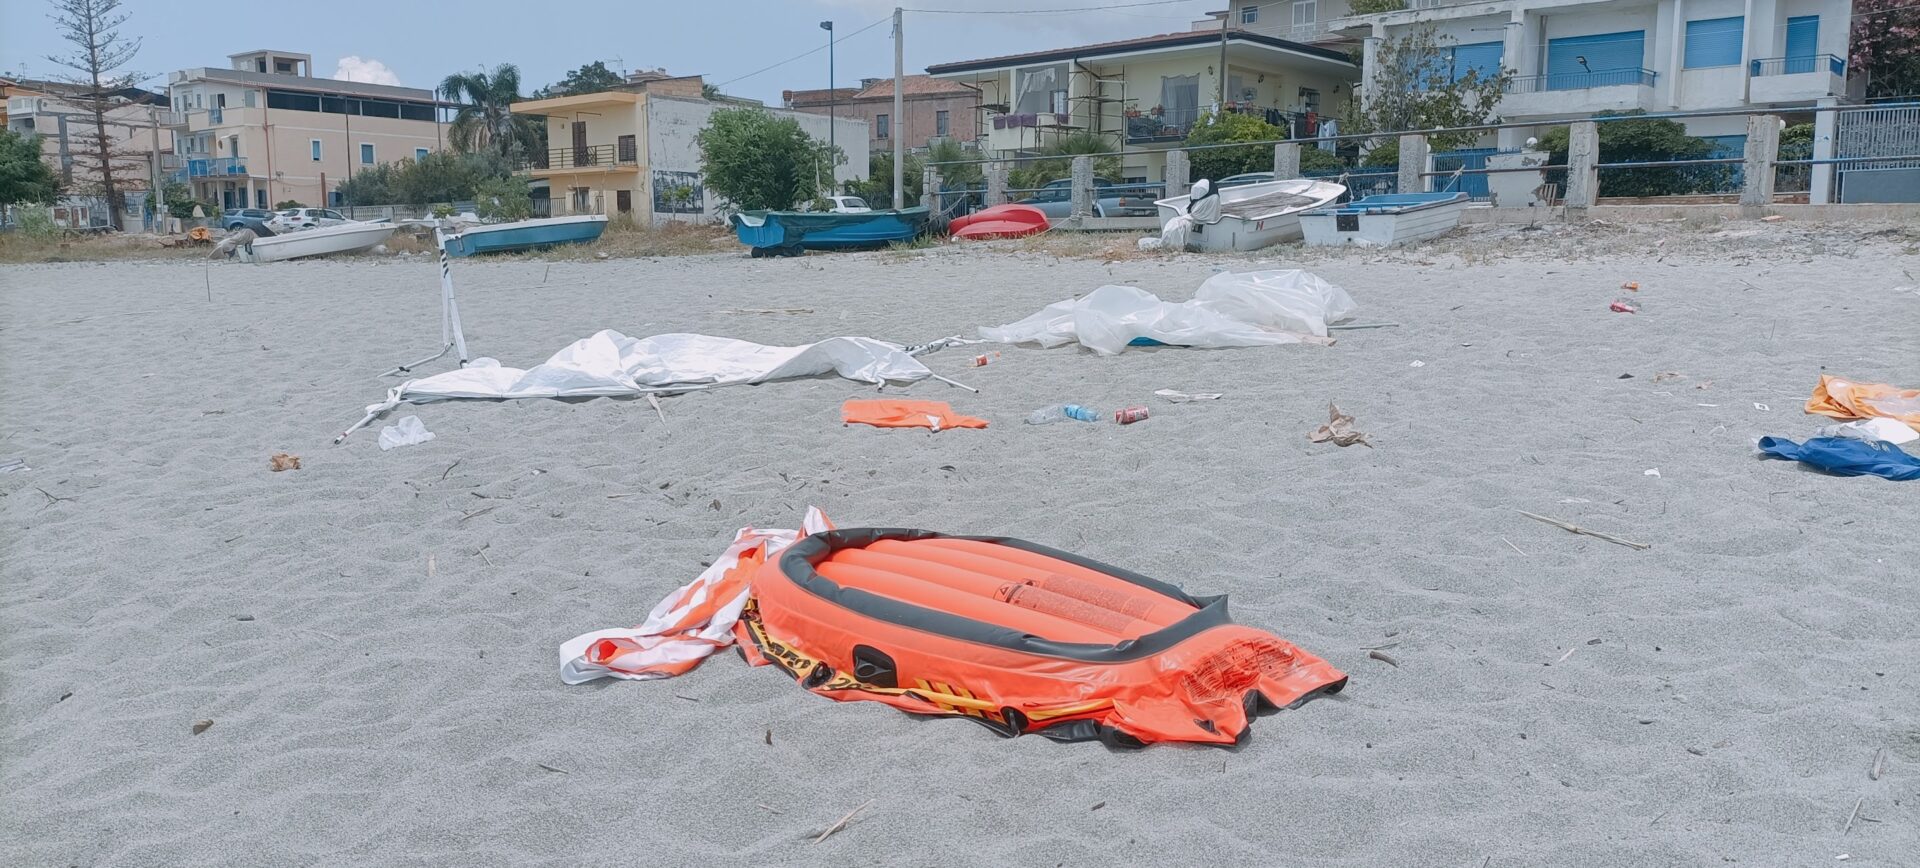 Bova Marina, dopo la giornata ecologica spiaggia ancora invasa dai rifiuti